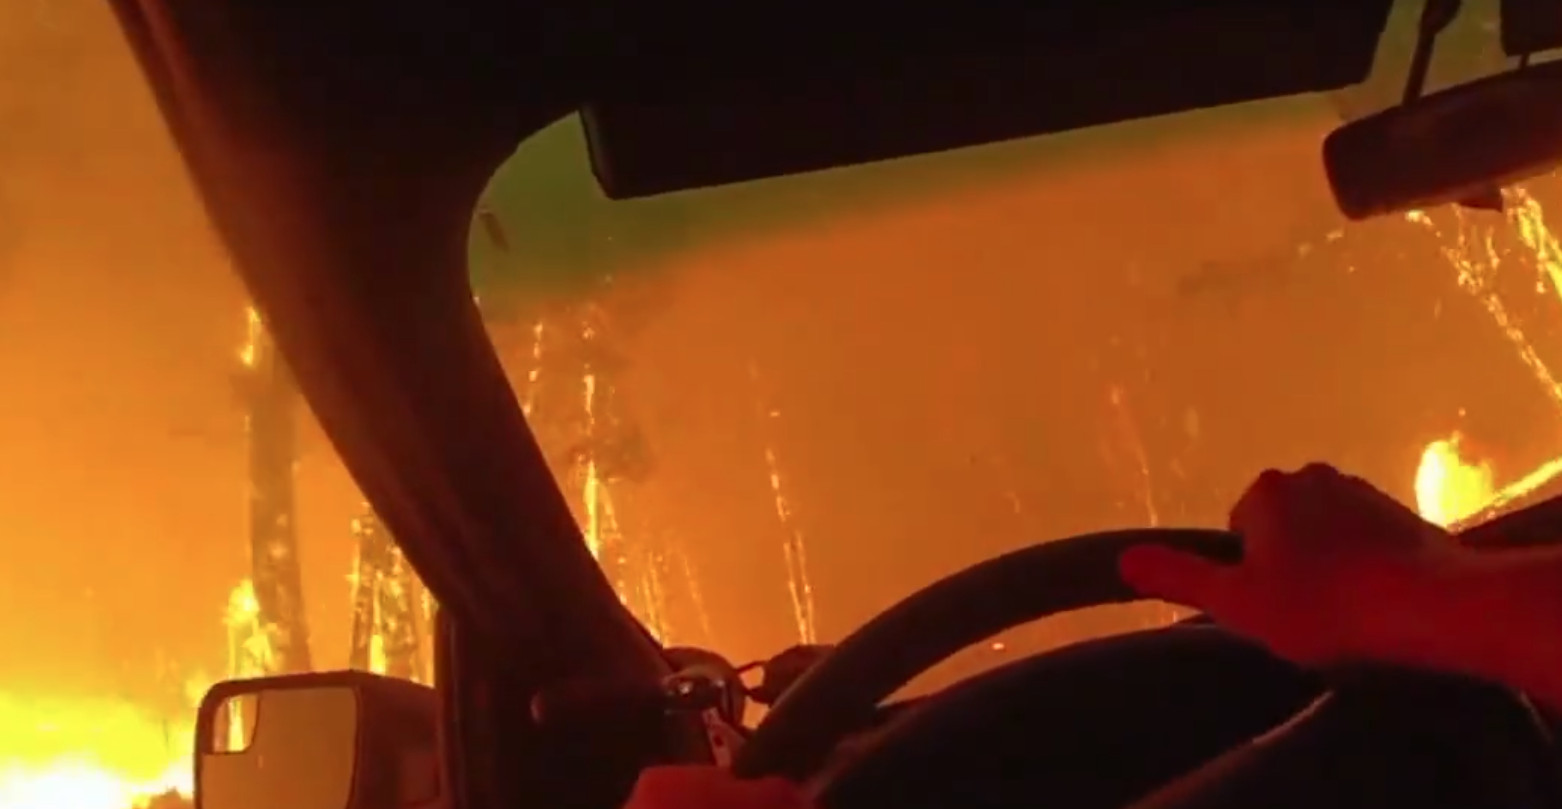 Περιπολικό περνά μέσα από φωτιά: Ανατριχιαστικό βίντεο από κάμερα αστυνομικού